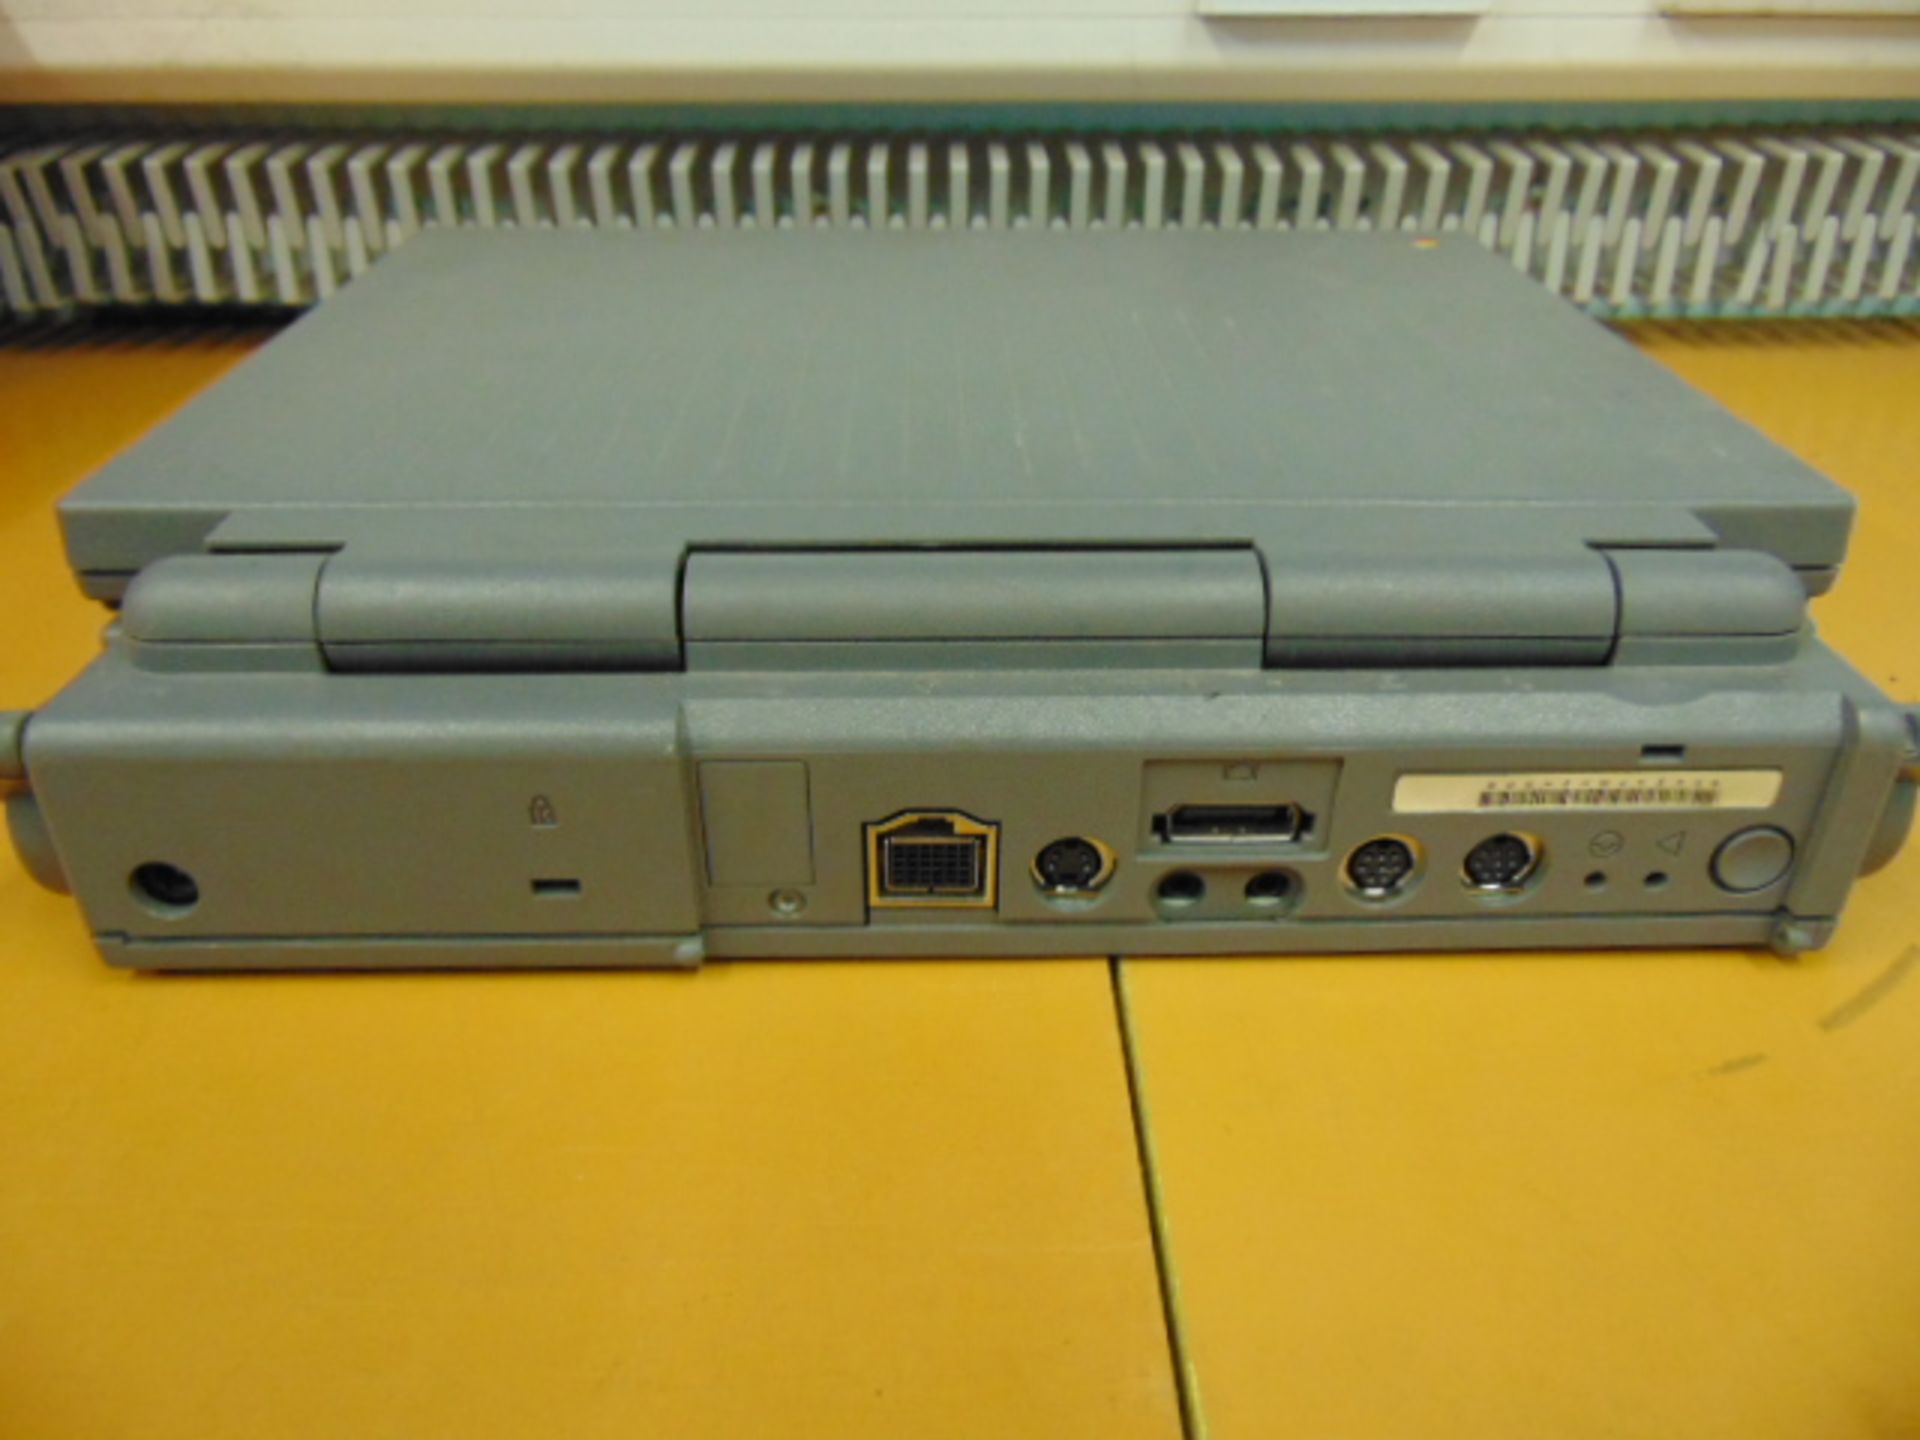 Rare Vintage Apple Macintosh Powerbook 160 M4550 - Image 4 of 8